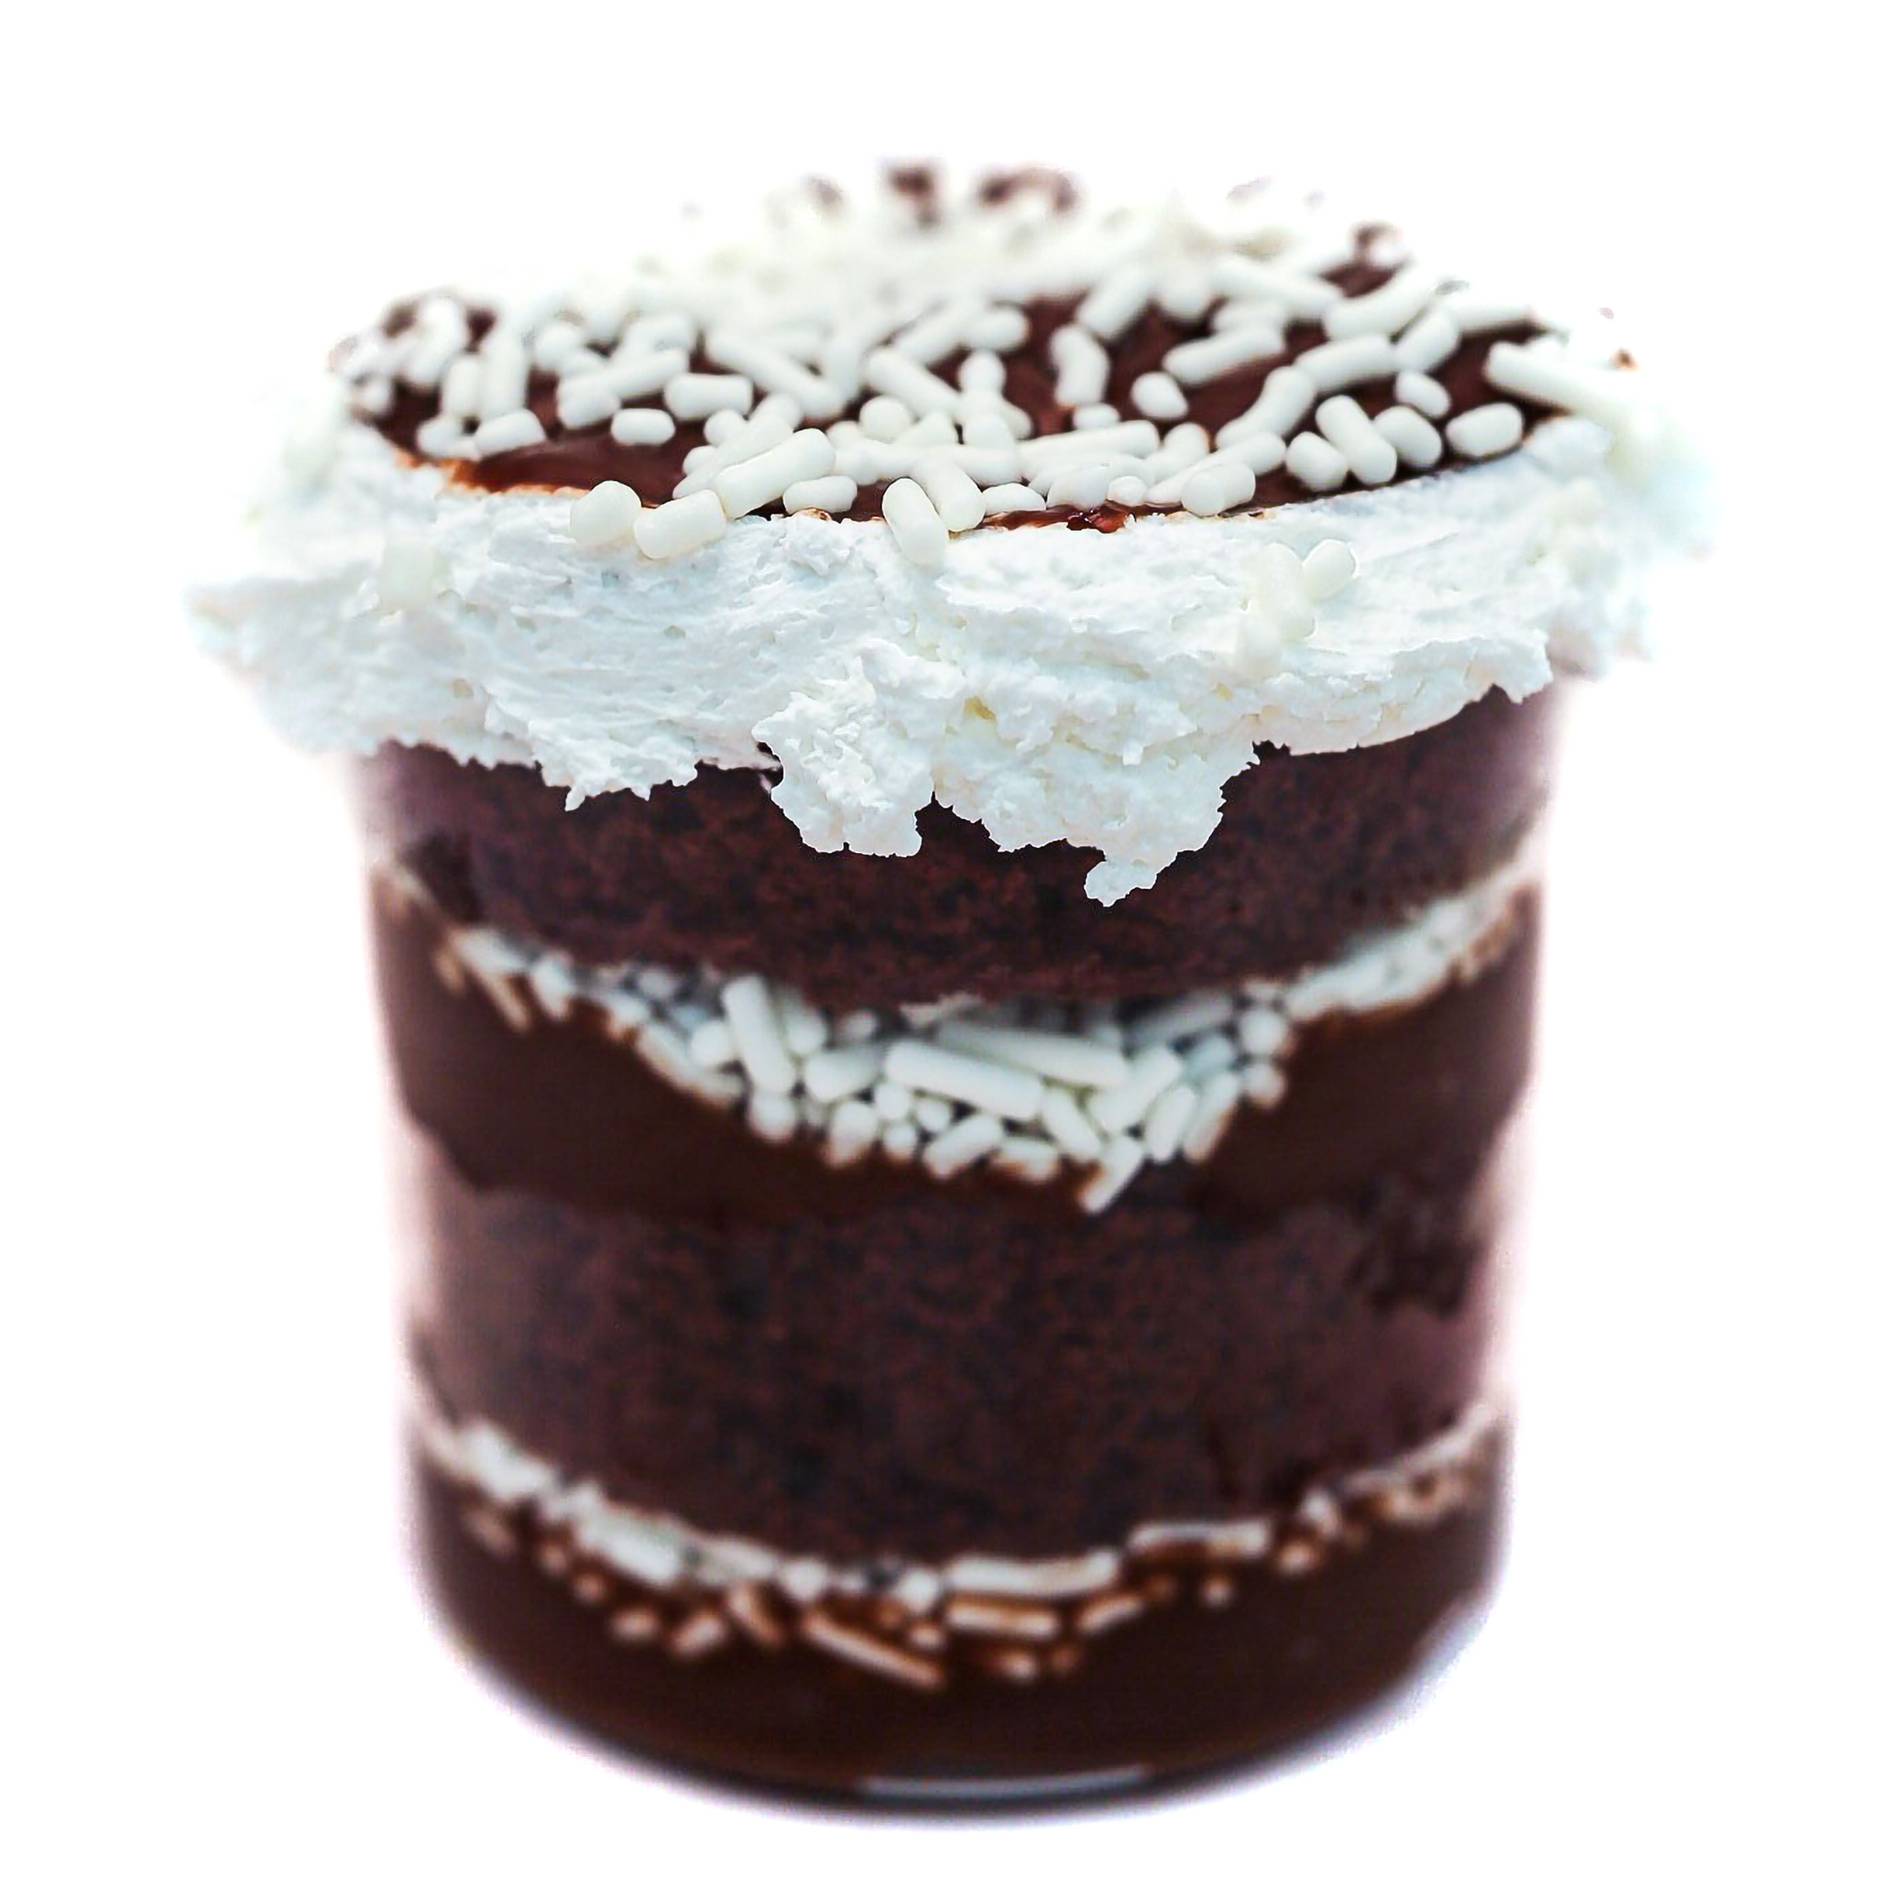 JARS-Chocolate_Birthday_Cake-credit-jars-by-fabio-viviani.jpg